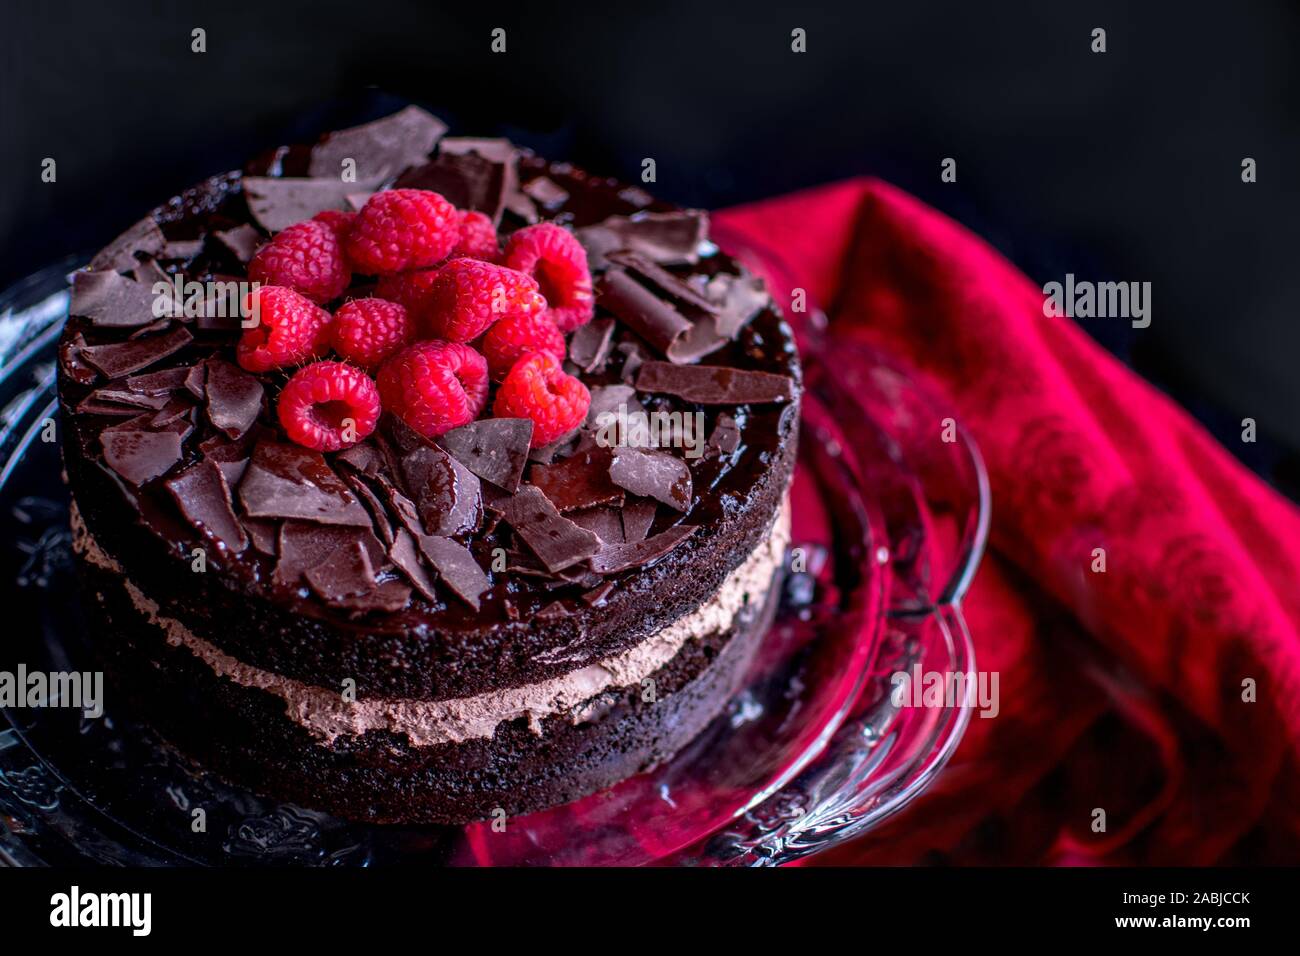 Leckere Schokolade Kuchen ist fotografiert closeup, mit Schlagsahne Schokolade, Schokolade, rasiert und mit frischen roten Himbeeren gekrönt Stockfoto